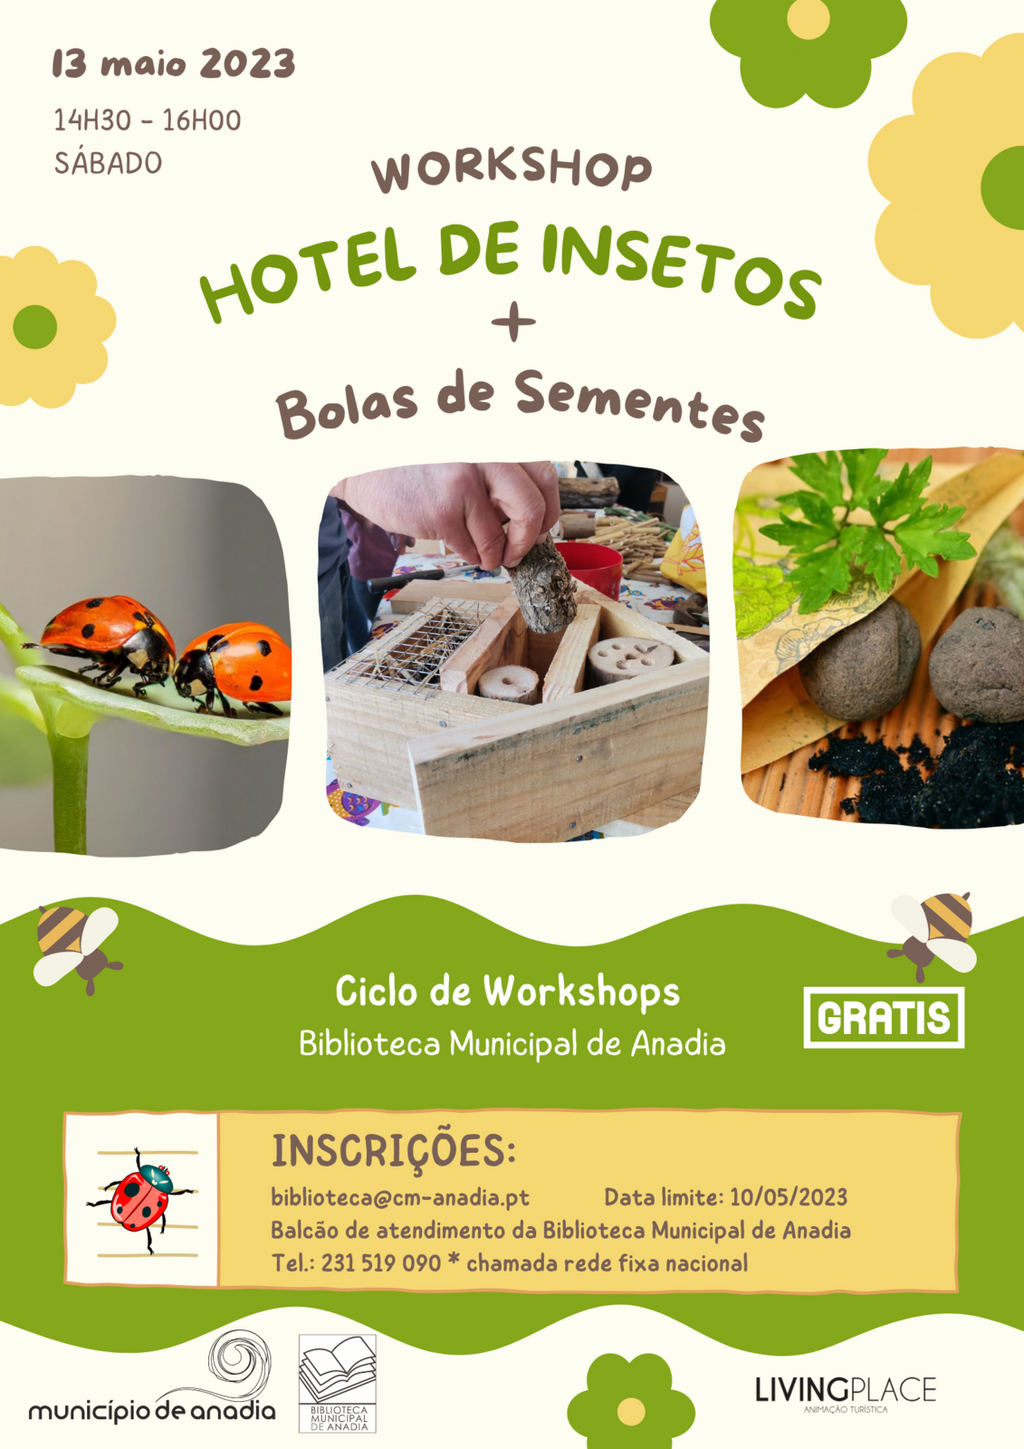 Workshop "Hotel de Insectos + bolas de sementes"